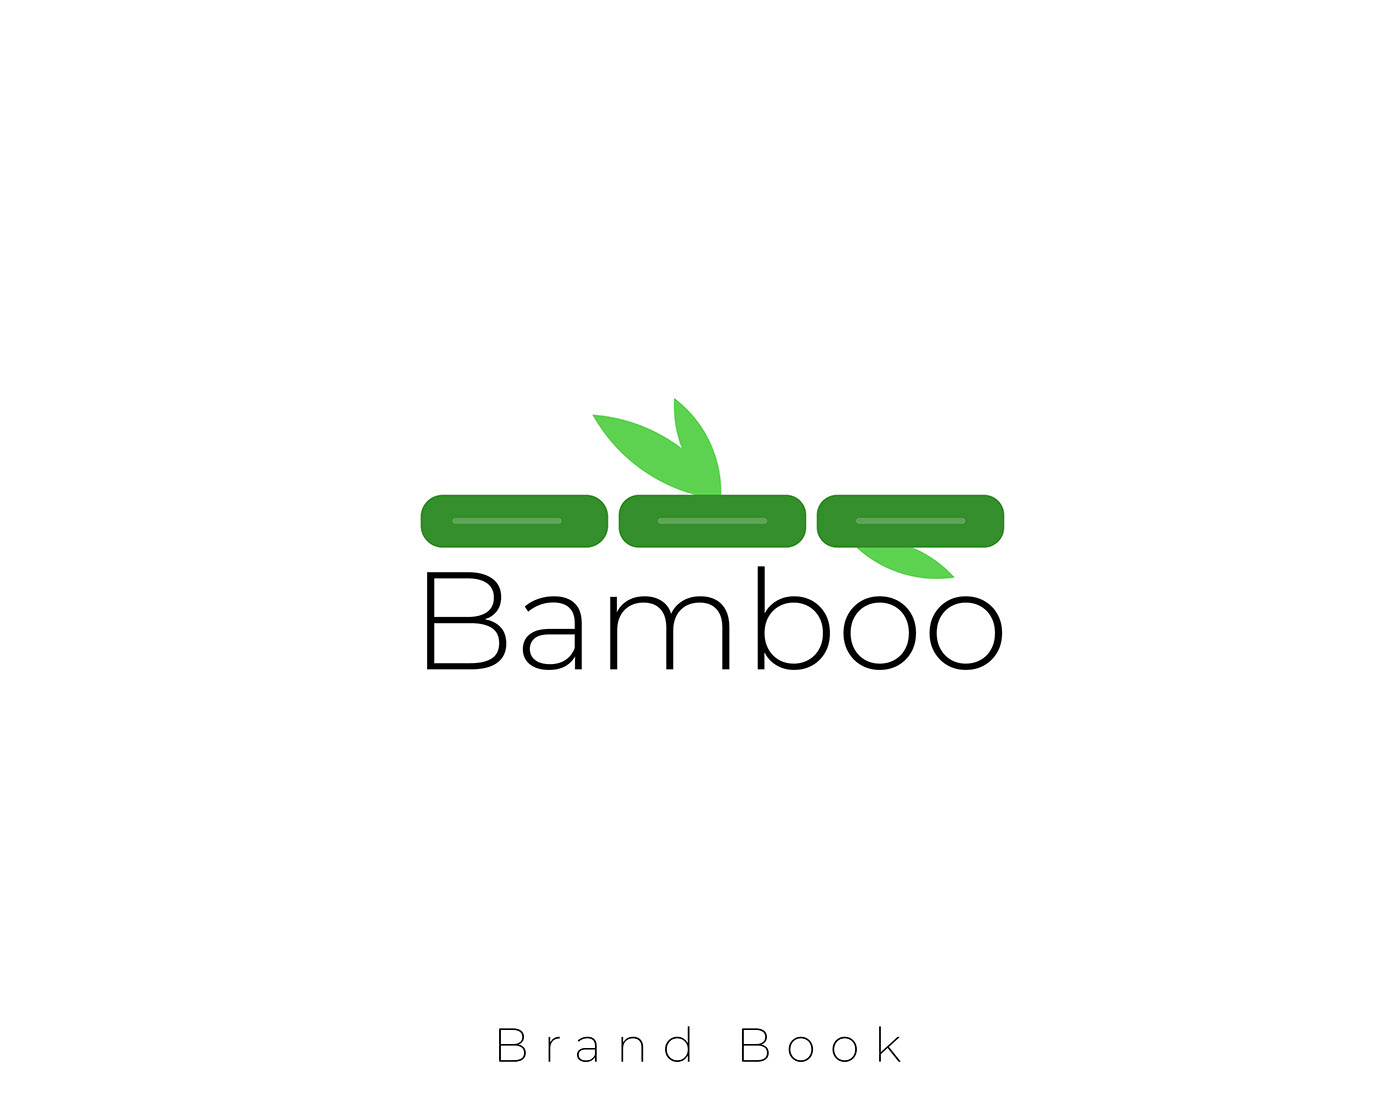 bamboo eco-friendly eco-hotel logo Logo Design logos